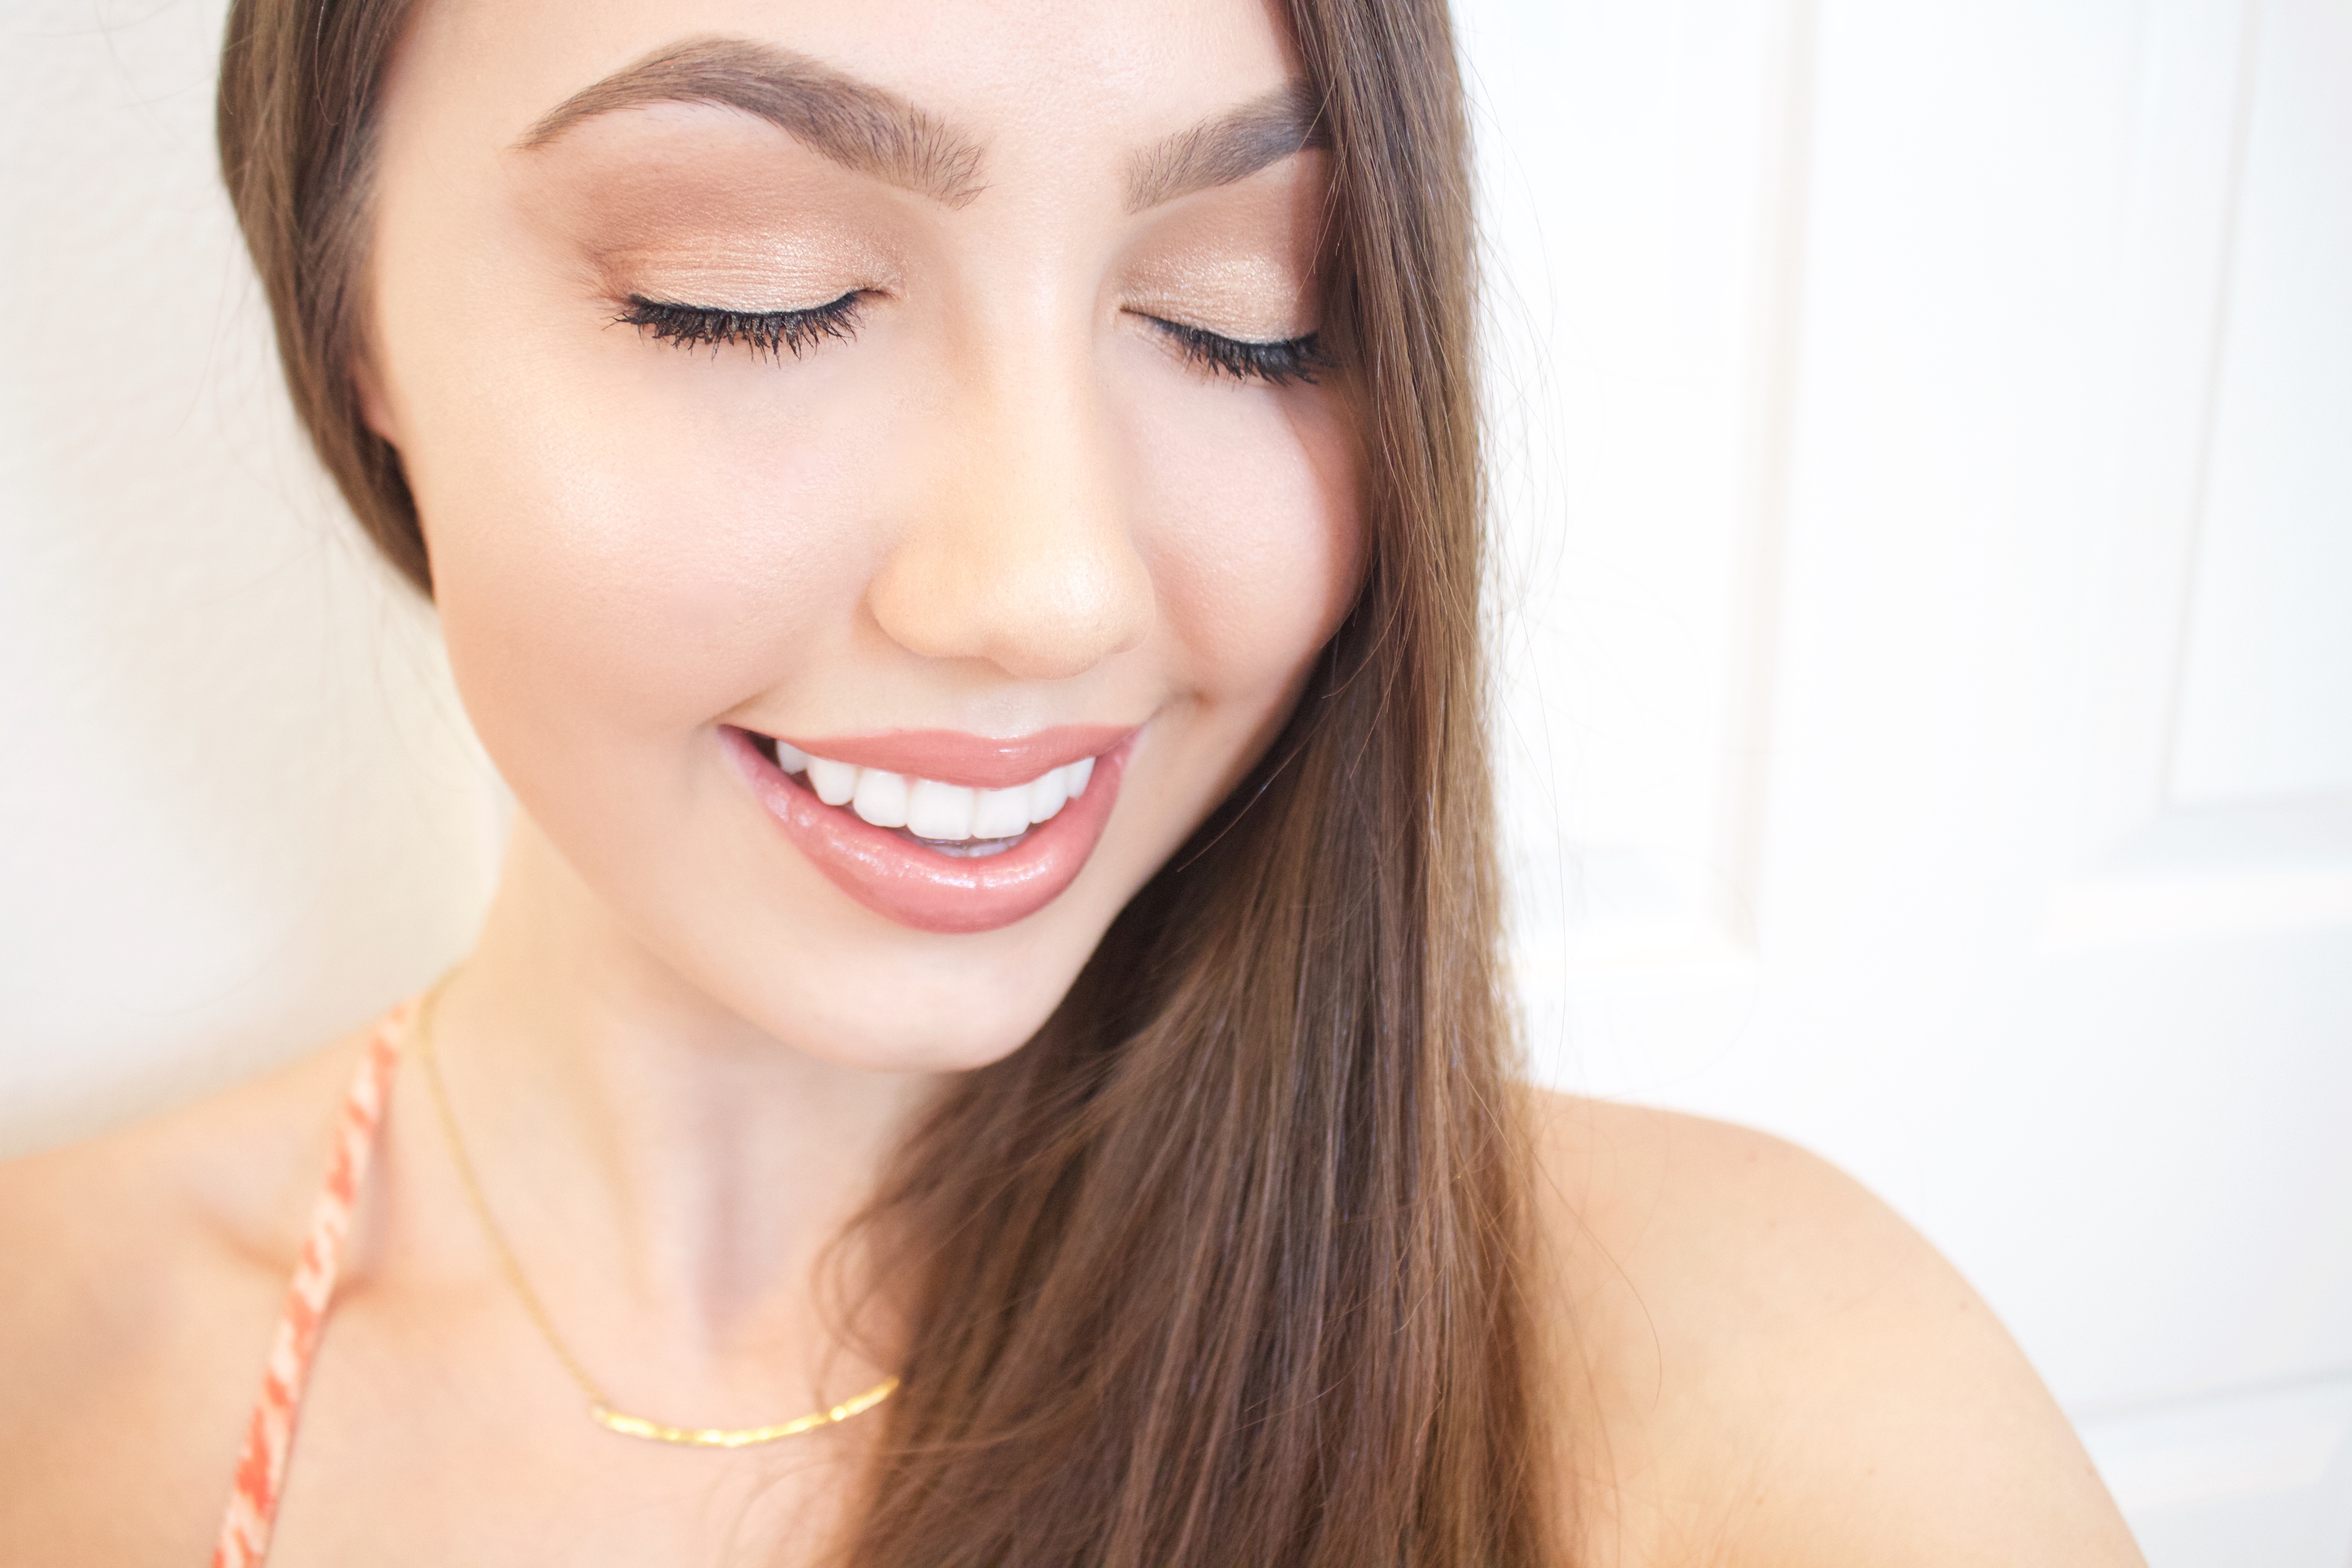 glowing makeup tutorial 2017